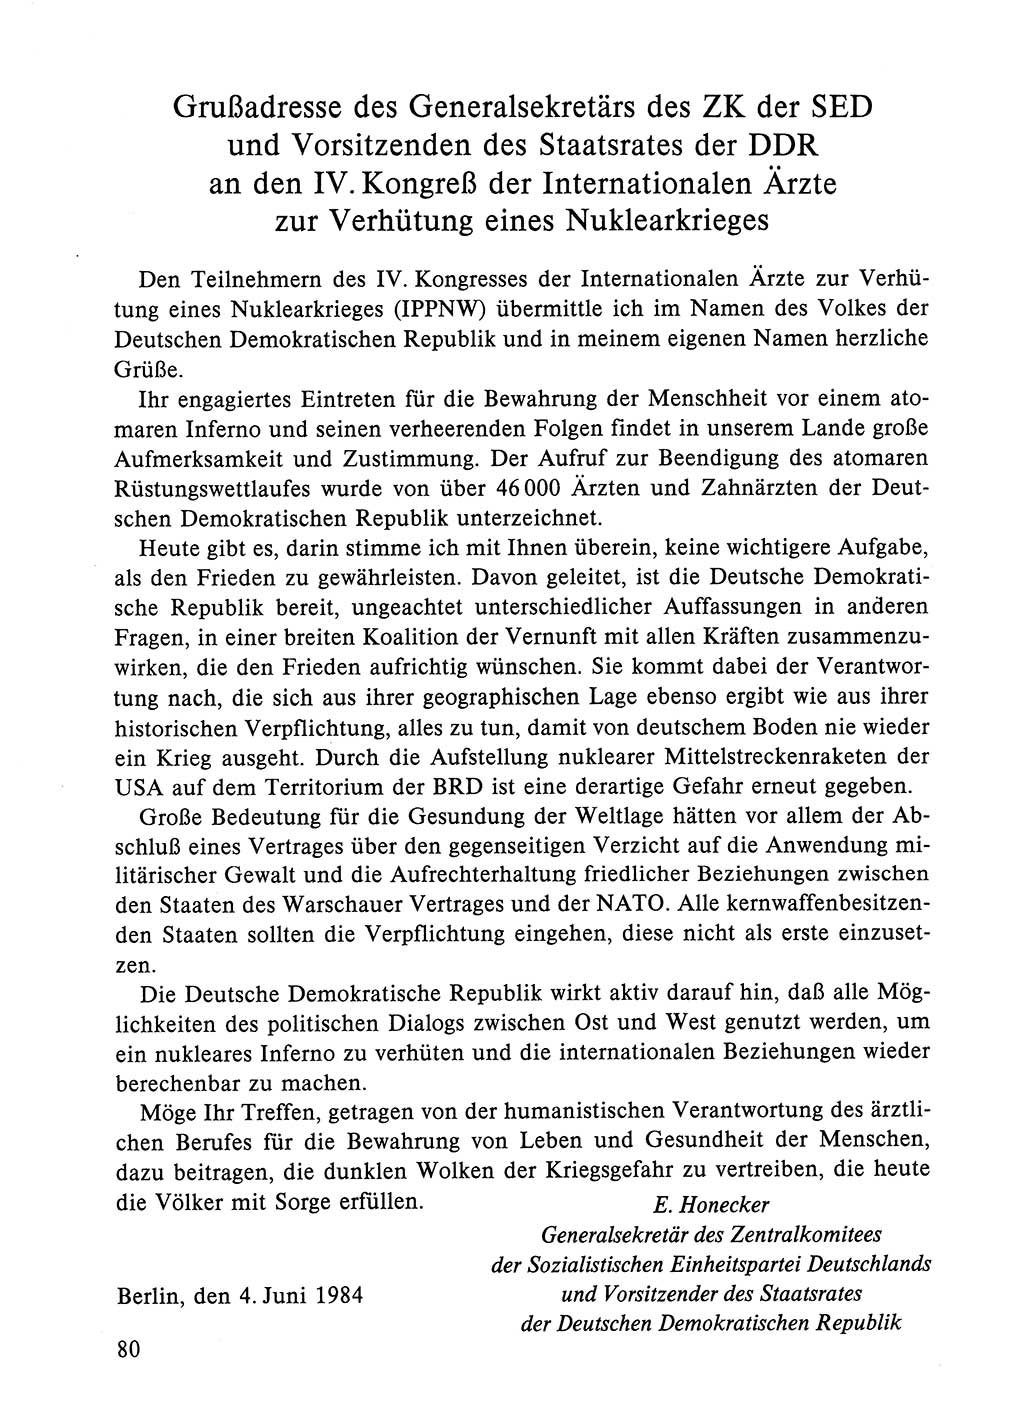 Dokumente der Sozialistischen Einheitspartei Deutschlands (SED) [Deutsche Demokratische Republik (DDR)] 1984-1985, Seite 80 (Dok. SED DDR 1984-1985, S. 80)